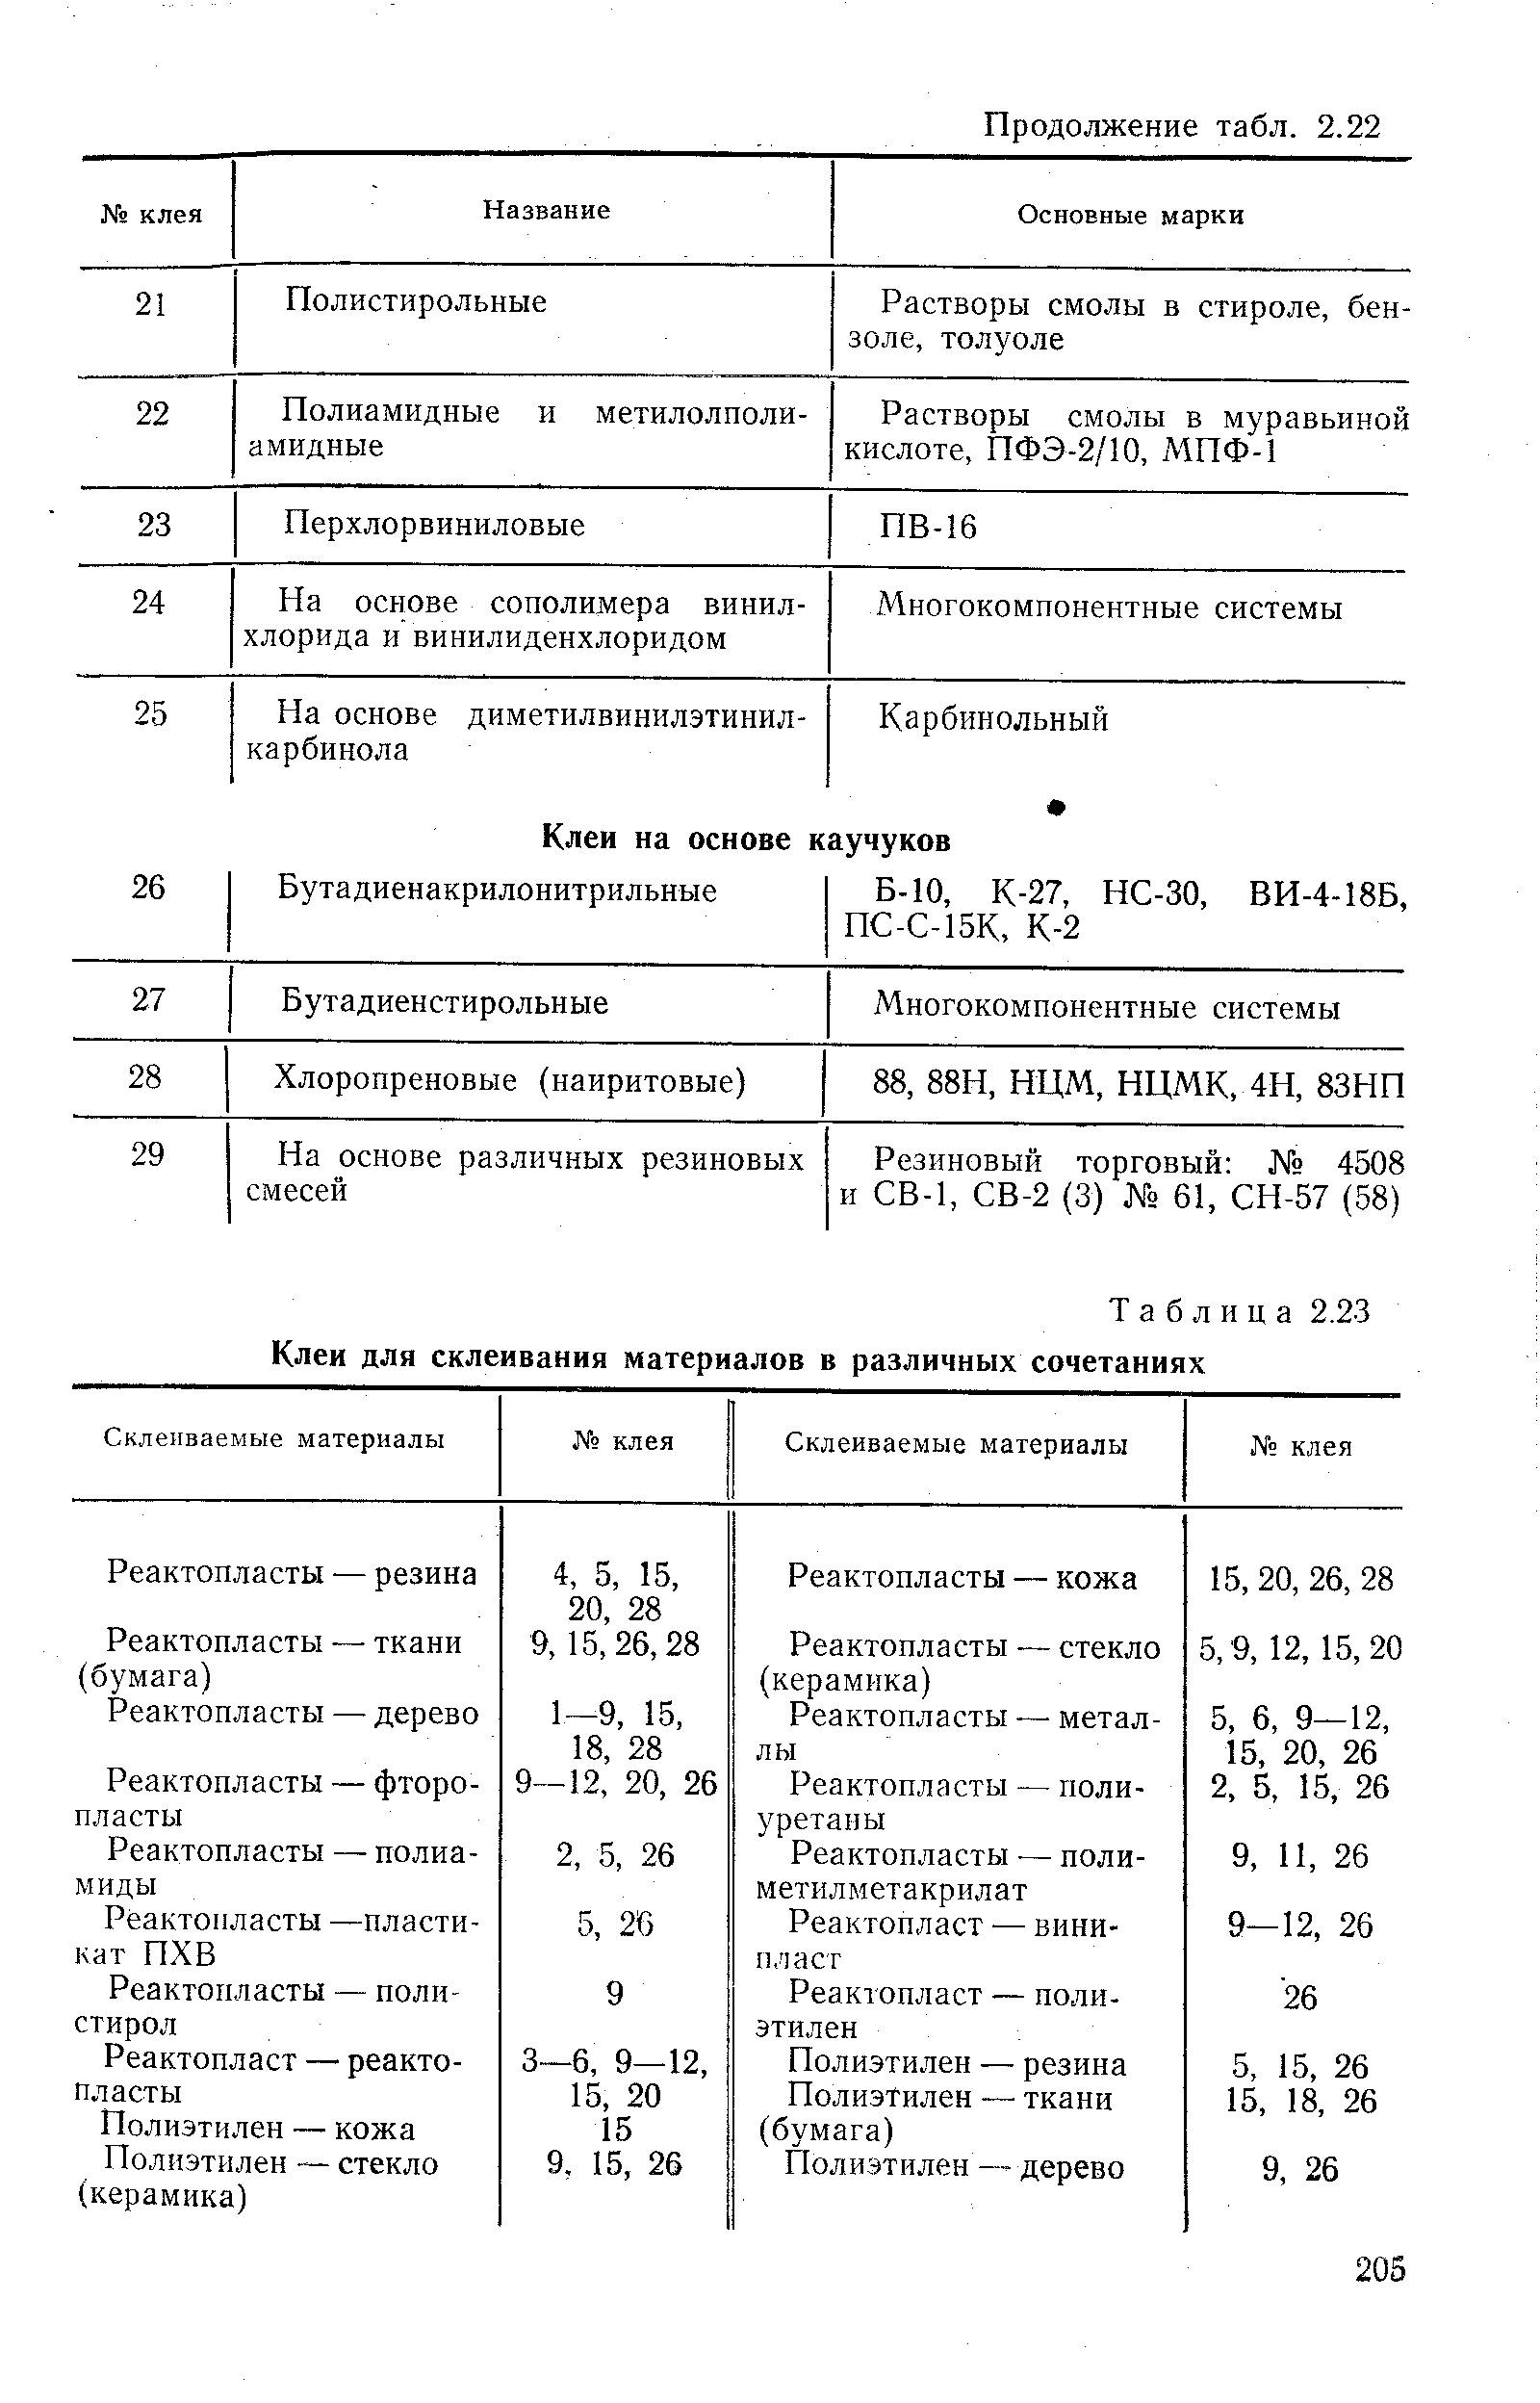 Таблица 2.23 Клеи для склеивания материалов в различных сочетаниях 
